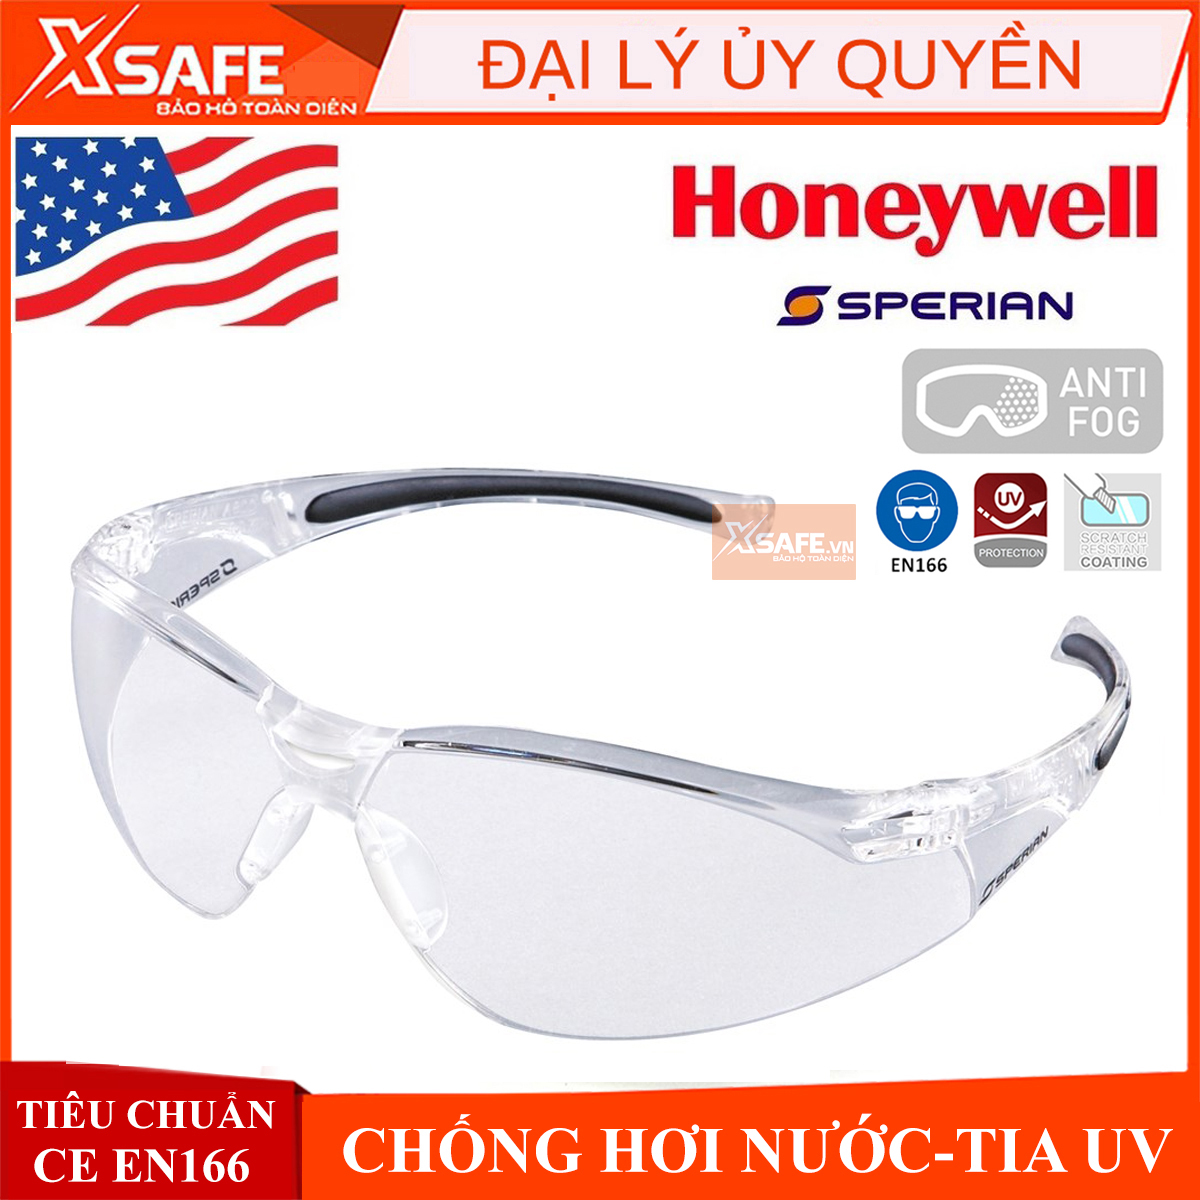 Kính bảo hộ lao động Honeywell A800 - Mắt kính chính hãng chống bụi, chống trầy xước, chống tia cực tím (màu trắng)